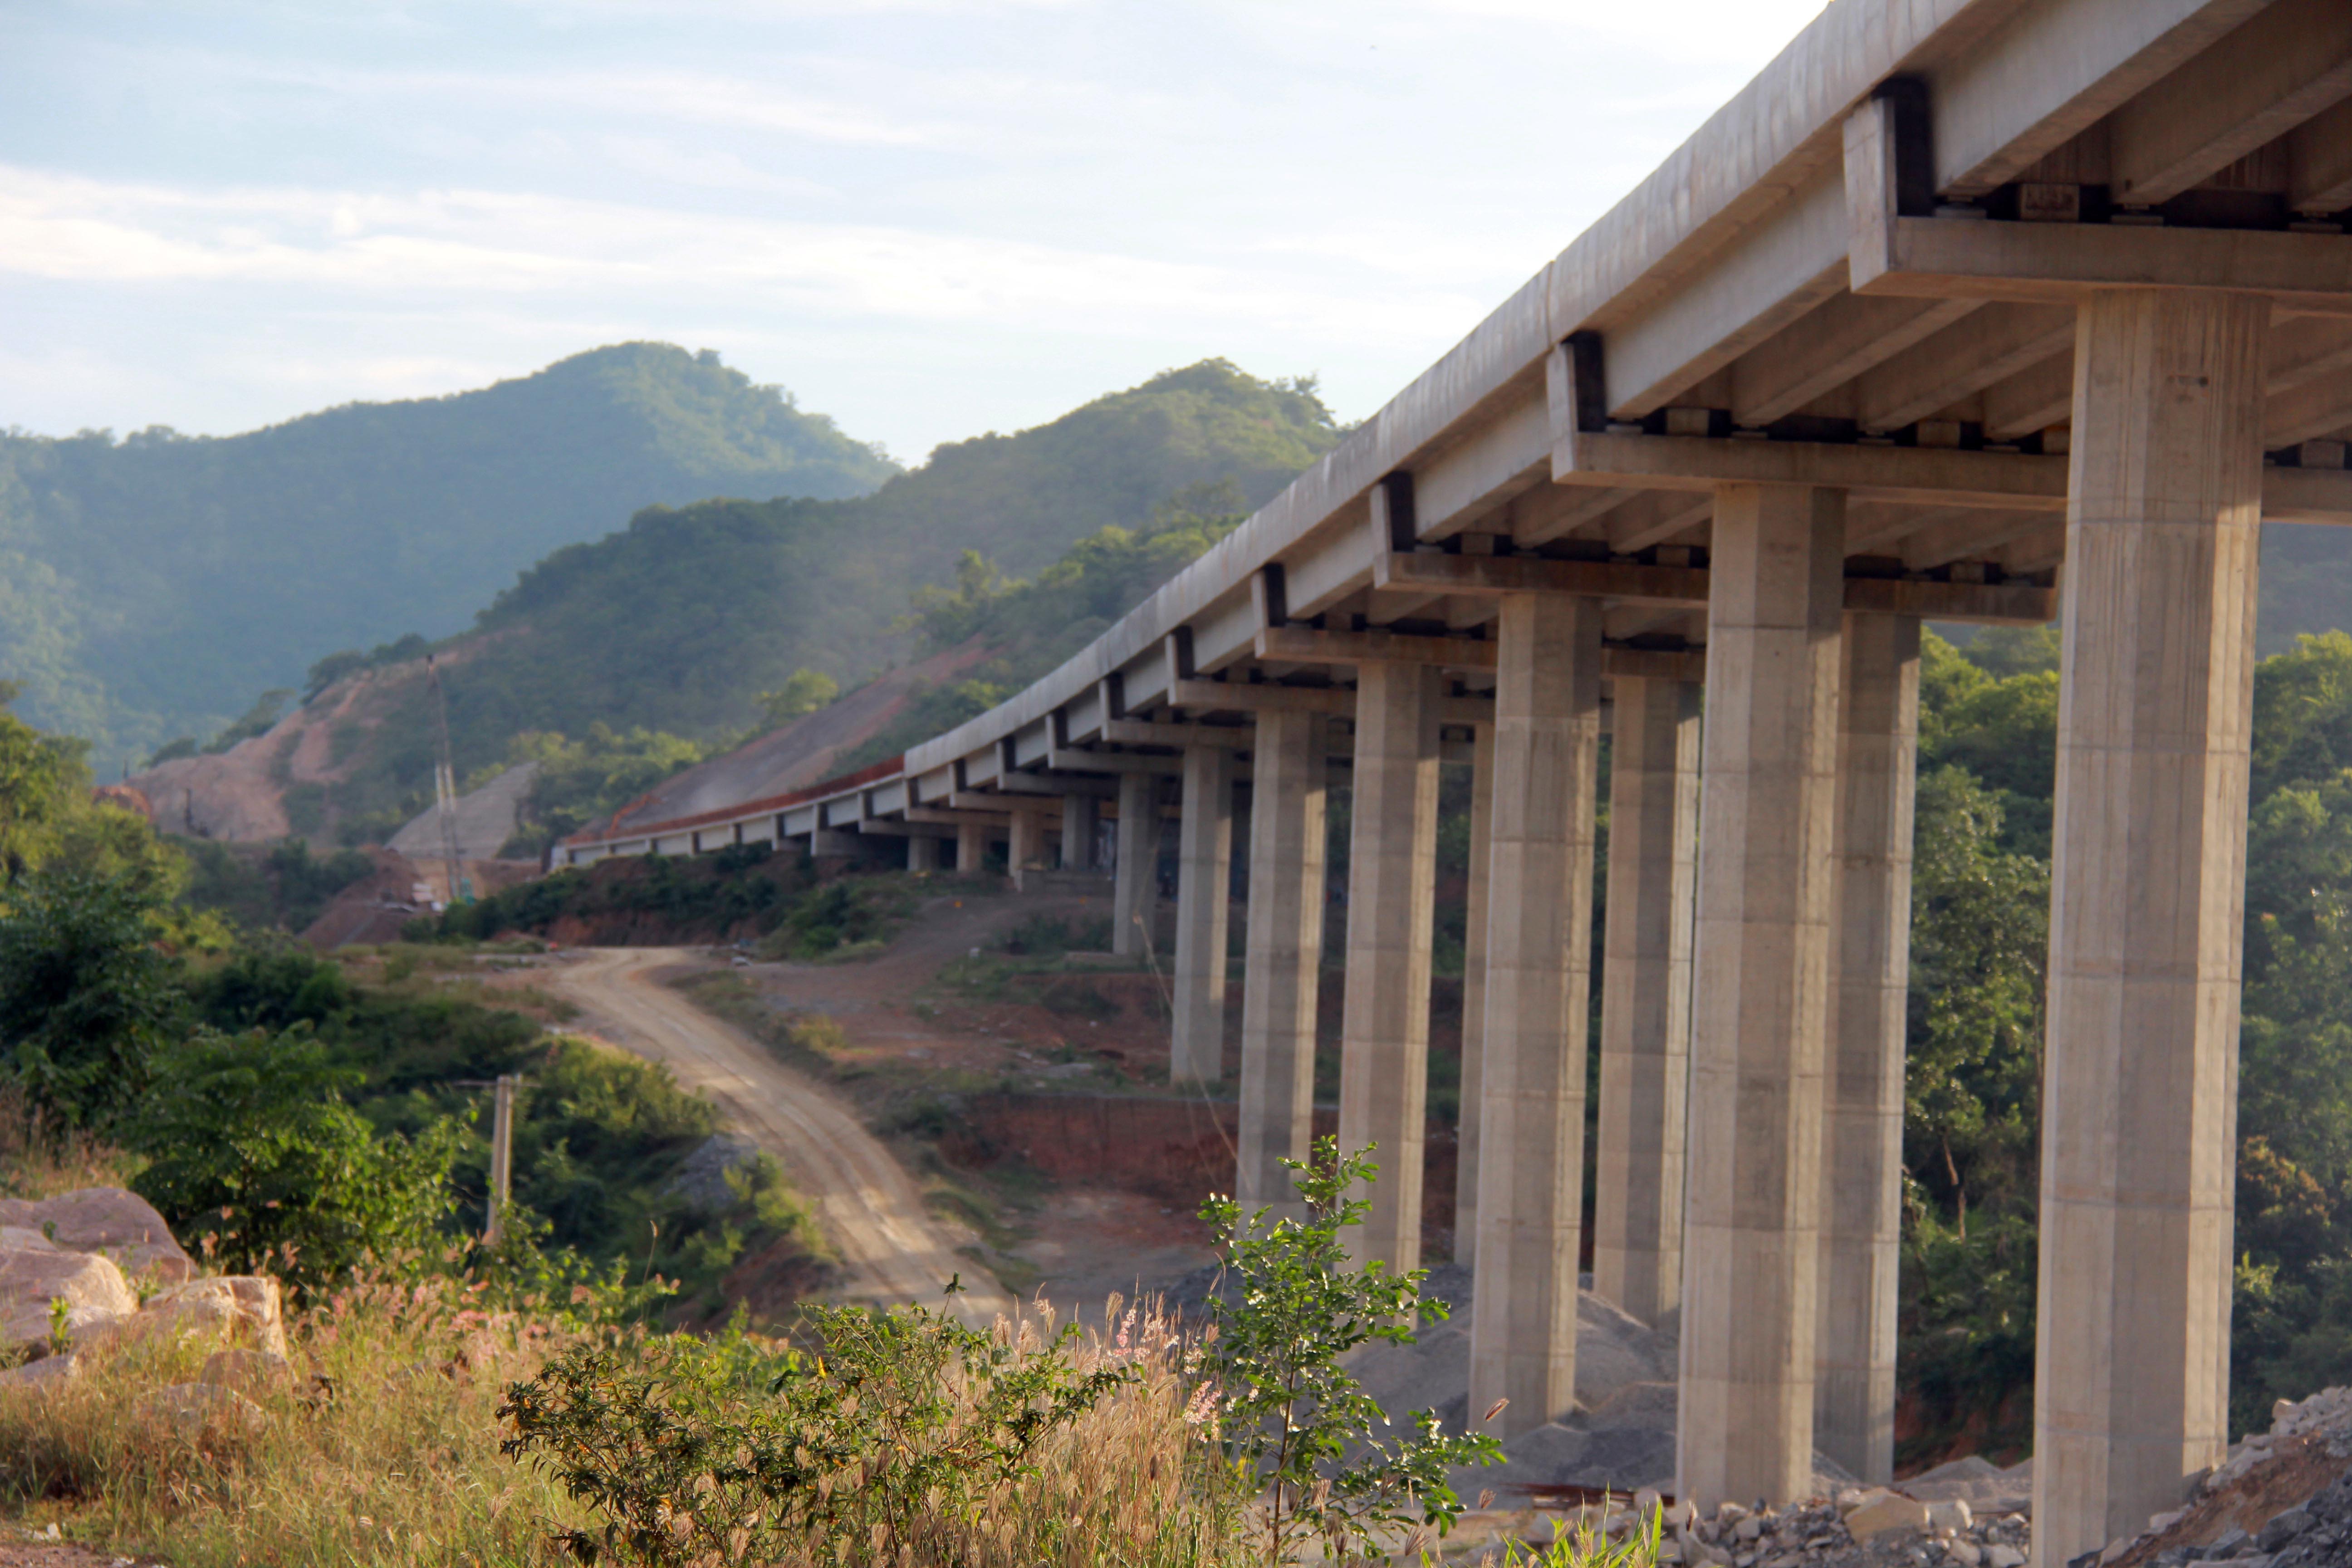 Trên tuyến có 34 cầu, gồm: 22 cầu trên đường cao tốc, 11 cầu vượt cao tốc và 1 cầu trên đường kết nối cao tốc với Quốc lộ 1 tại nút giao Du Long. Tất cả các hạng mục cầu, đường trên tuyến đều đã được hoàn thiện, sẵn sàng đưa vào hoạt động.